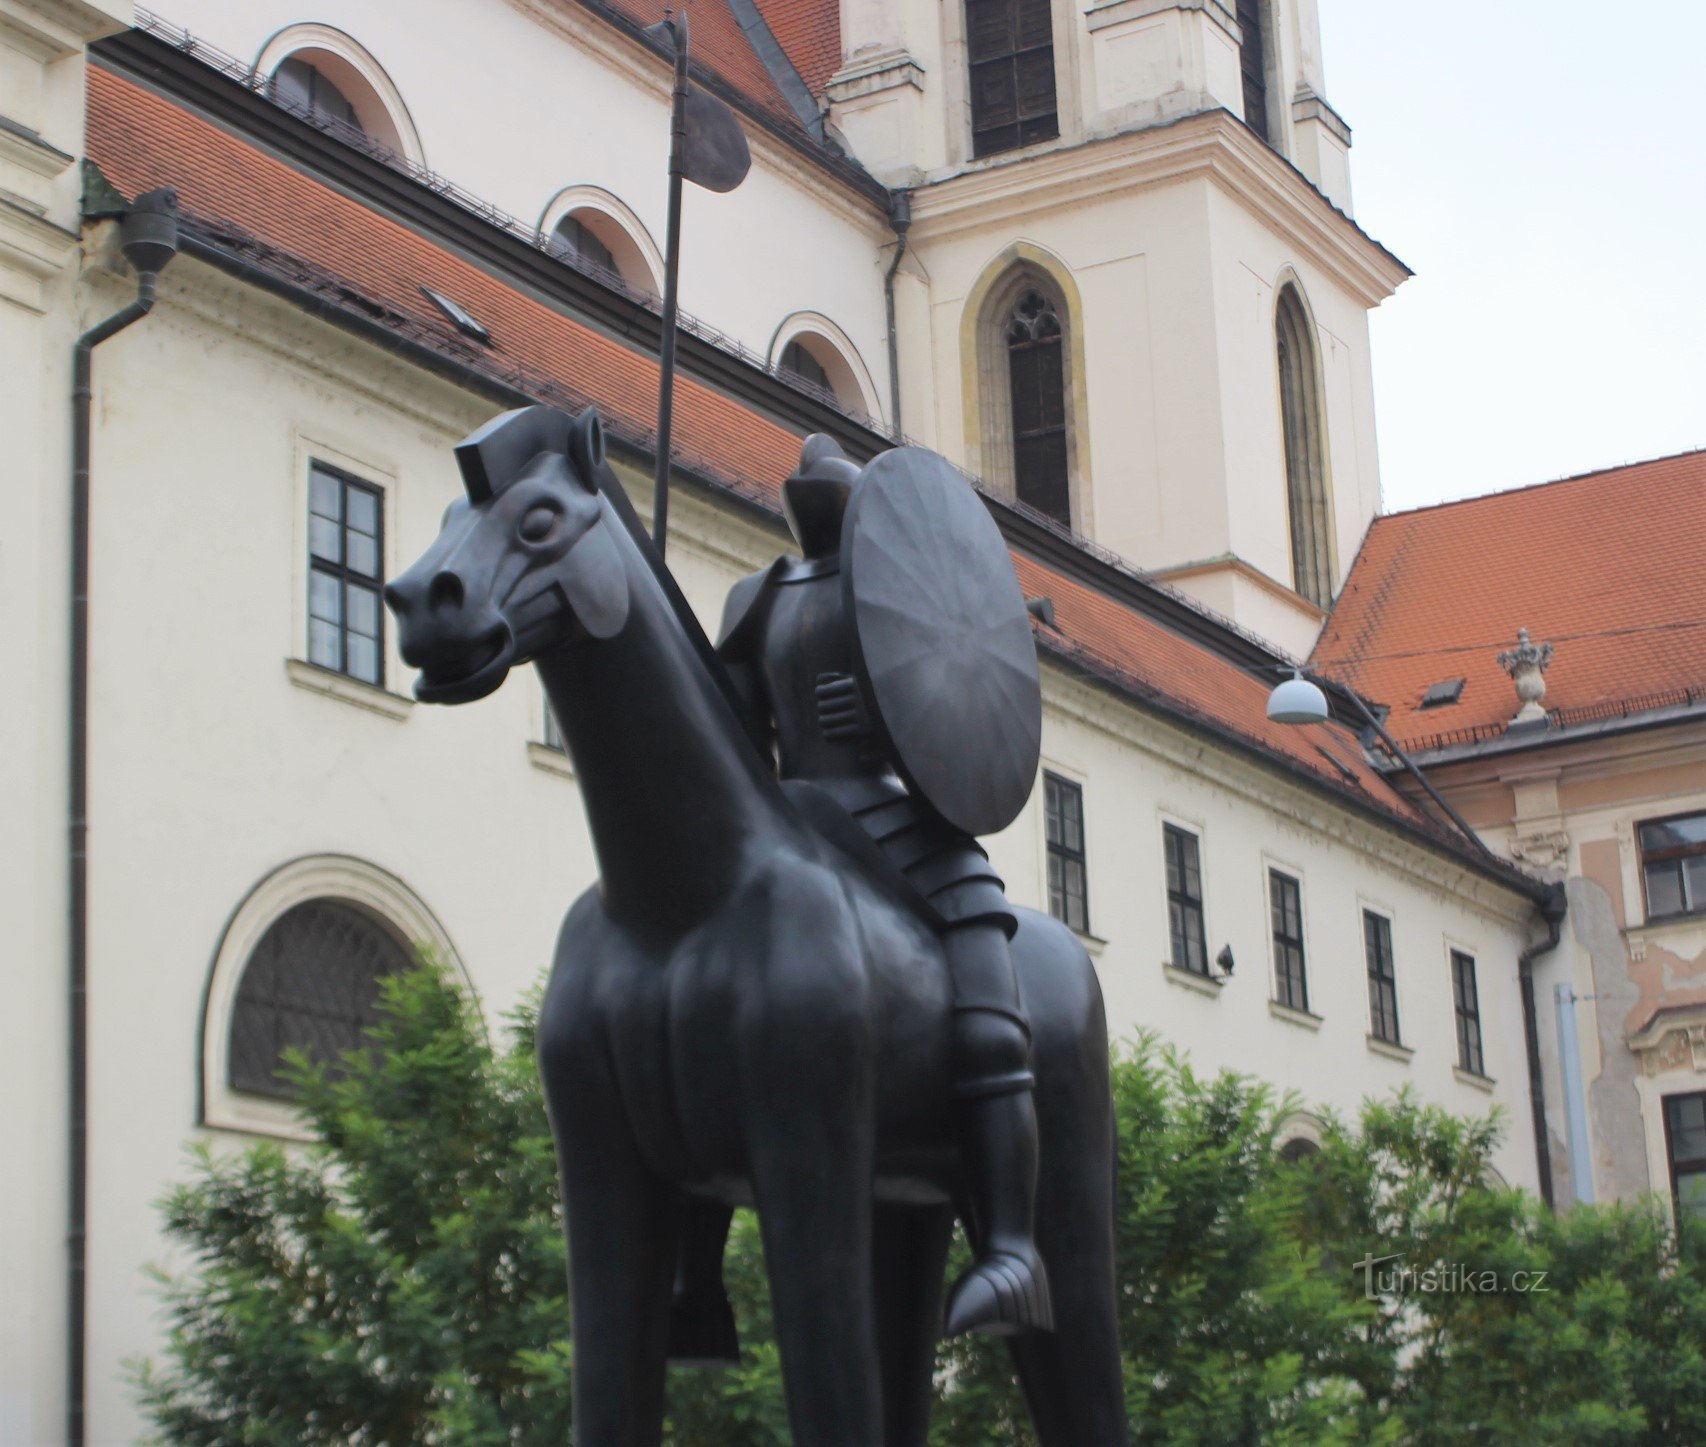 Jost von Luxemburg zu Pferd